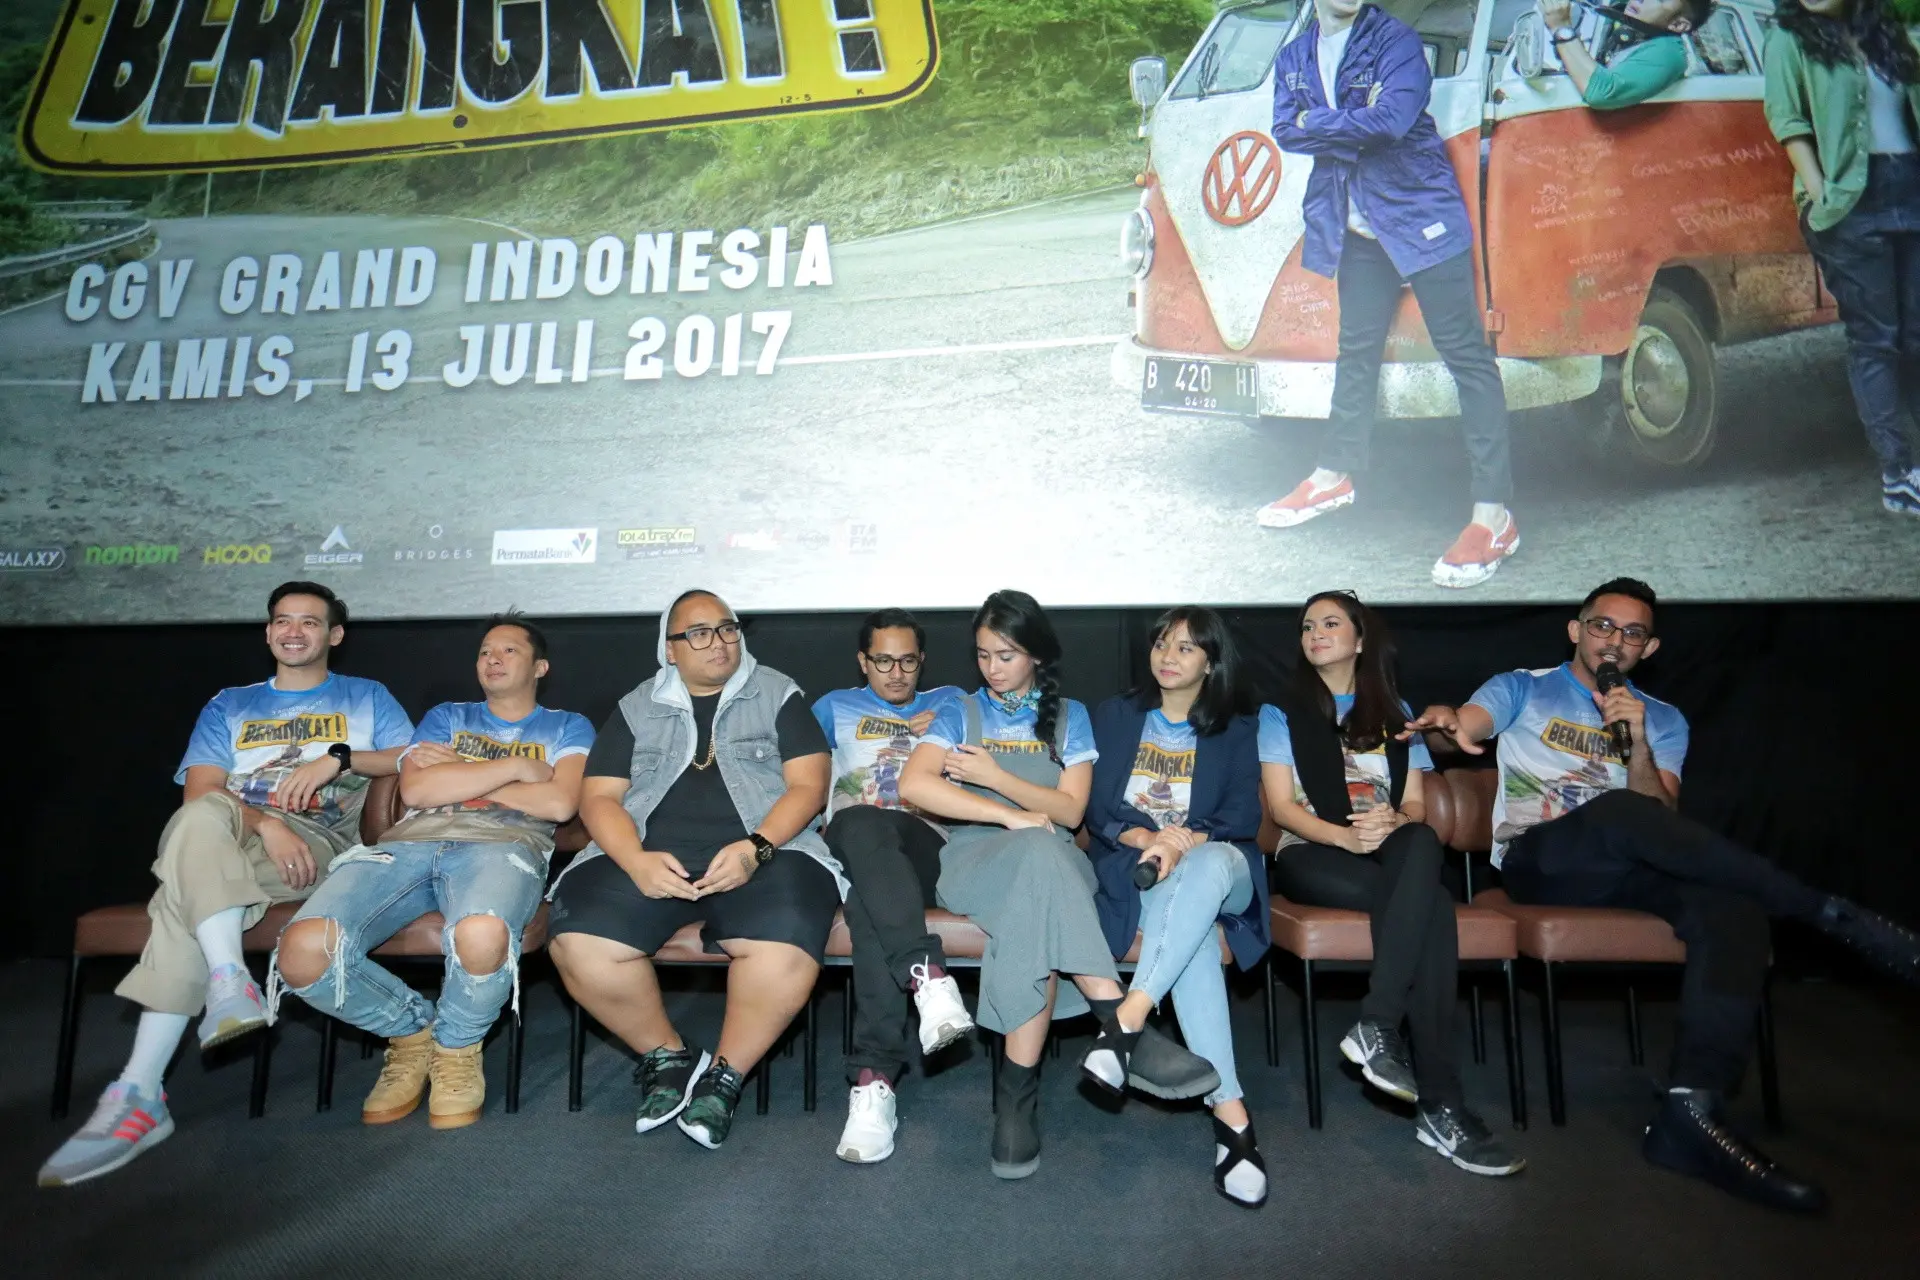 Mencari aktor dan aktris untuk membintangi sebuah film memang bukan hal mudah. Seperti yang dirasakan oleh Naya Anindita, sutradara salah satu film terbaru di Indonesia yang berjudul Berangkat. (Adrian Putra/Bintang.com)